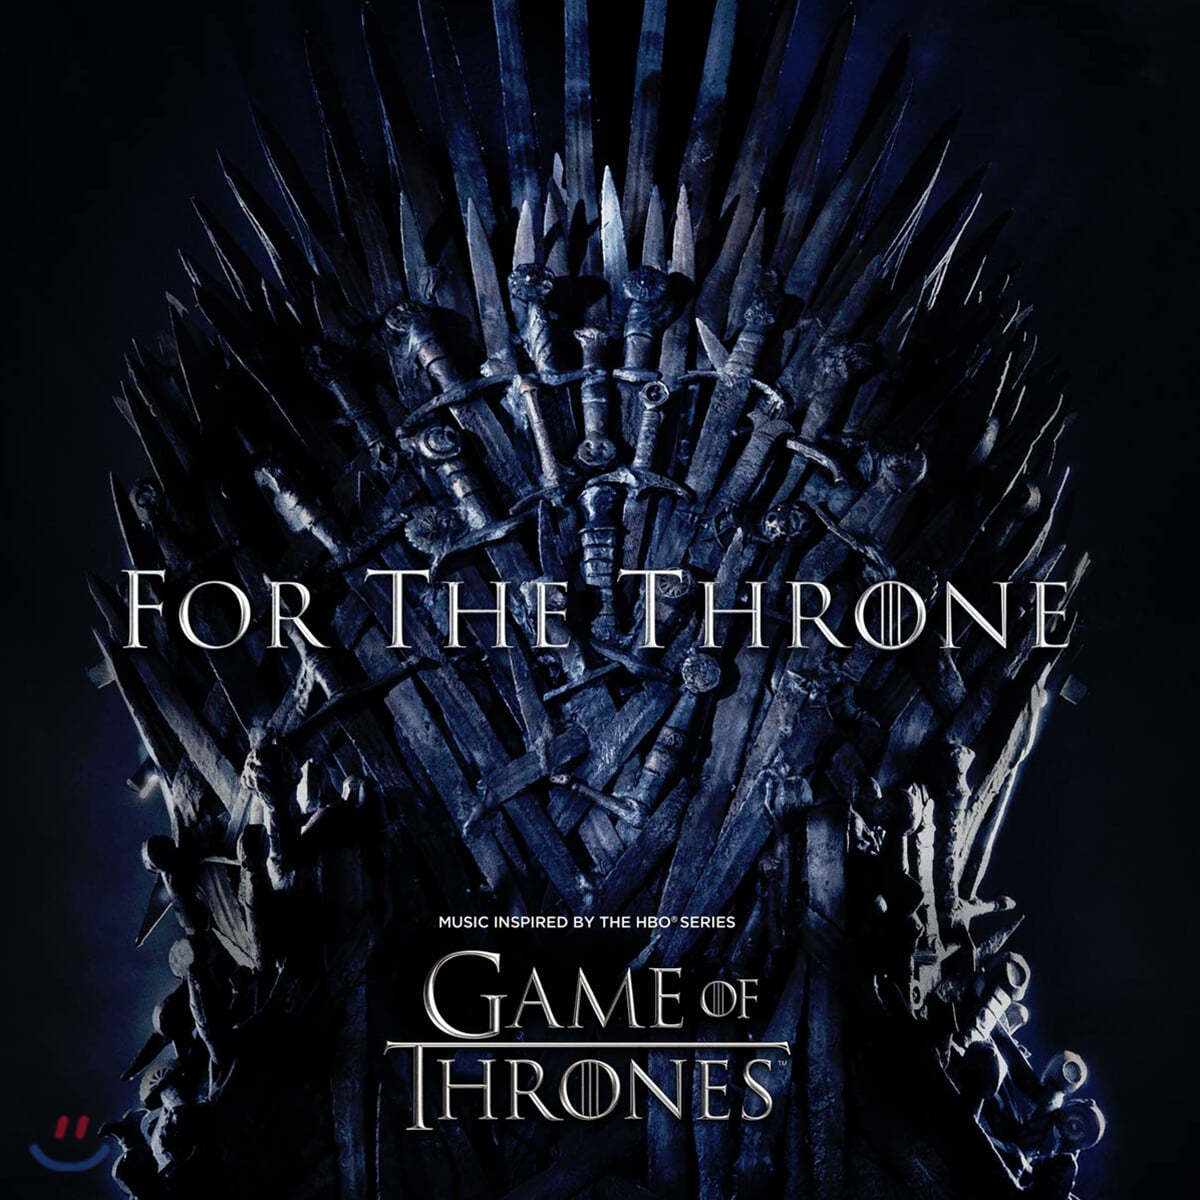 왕좌의 게임 시즌 8 드라마음악 (Game Of Thrones Season 8 OST 'For the Throne') [그레이 컬러 LP]